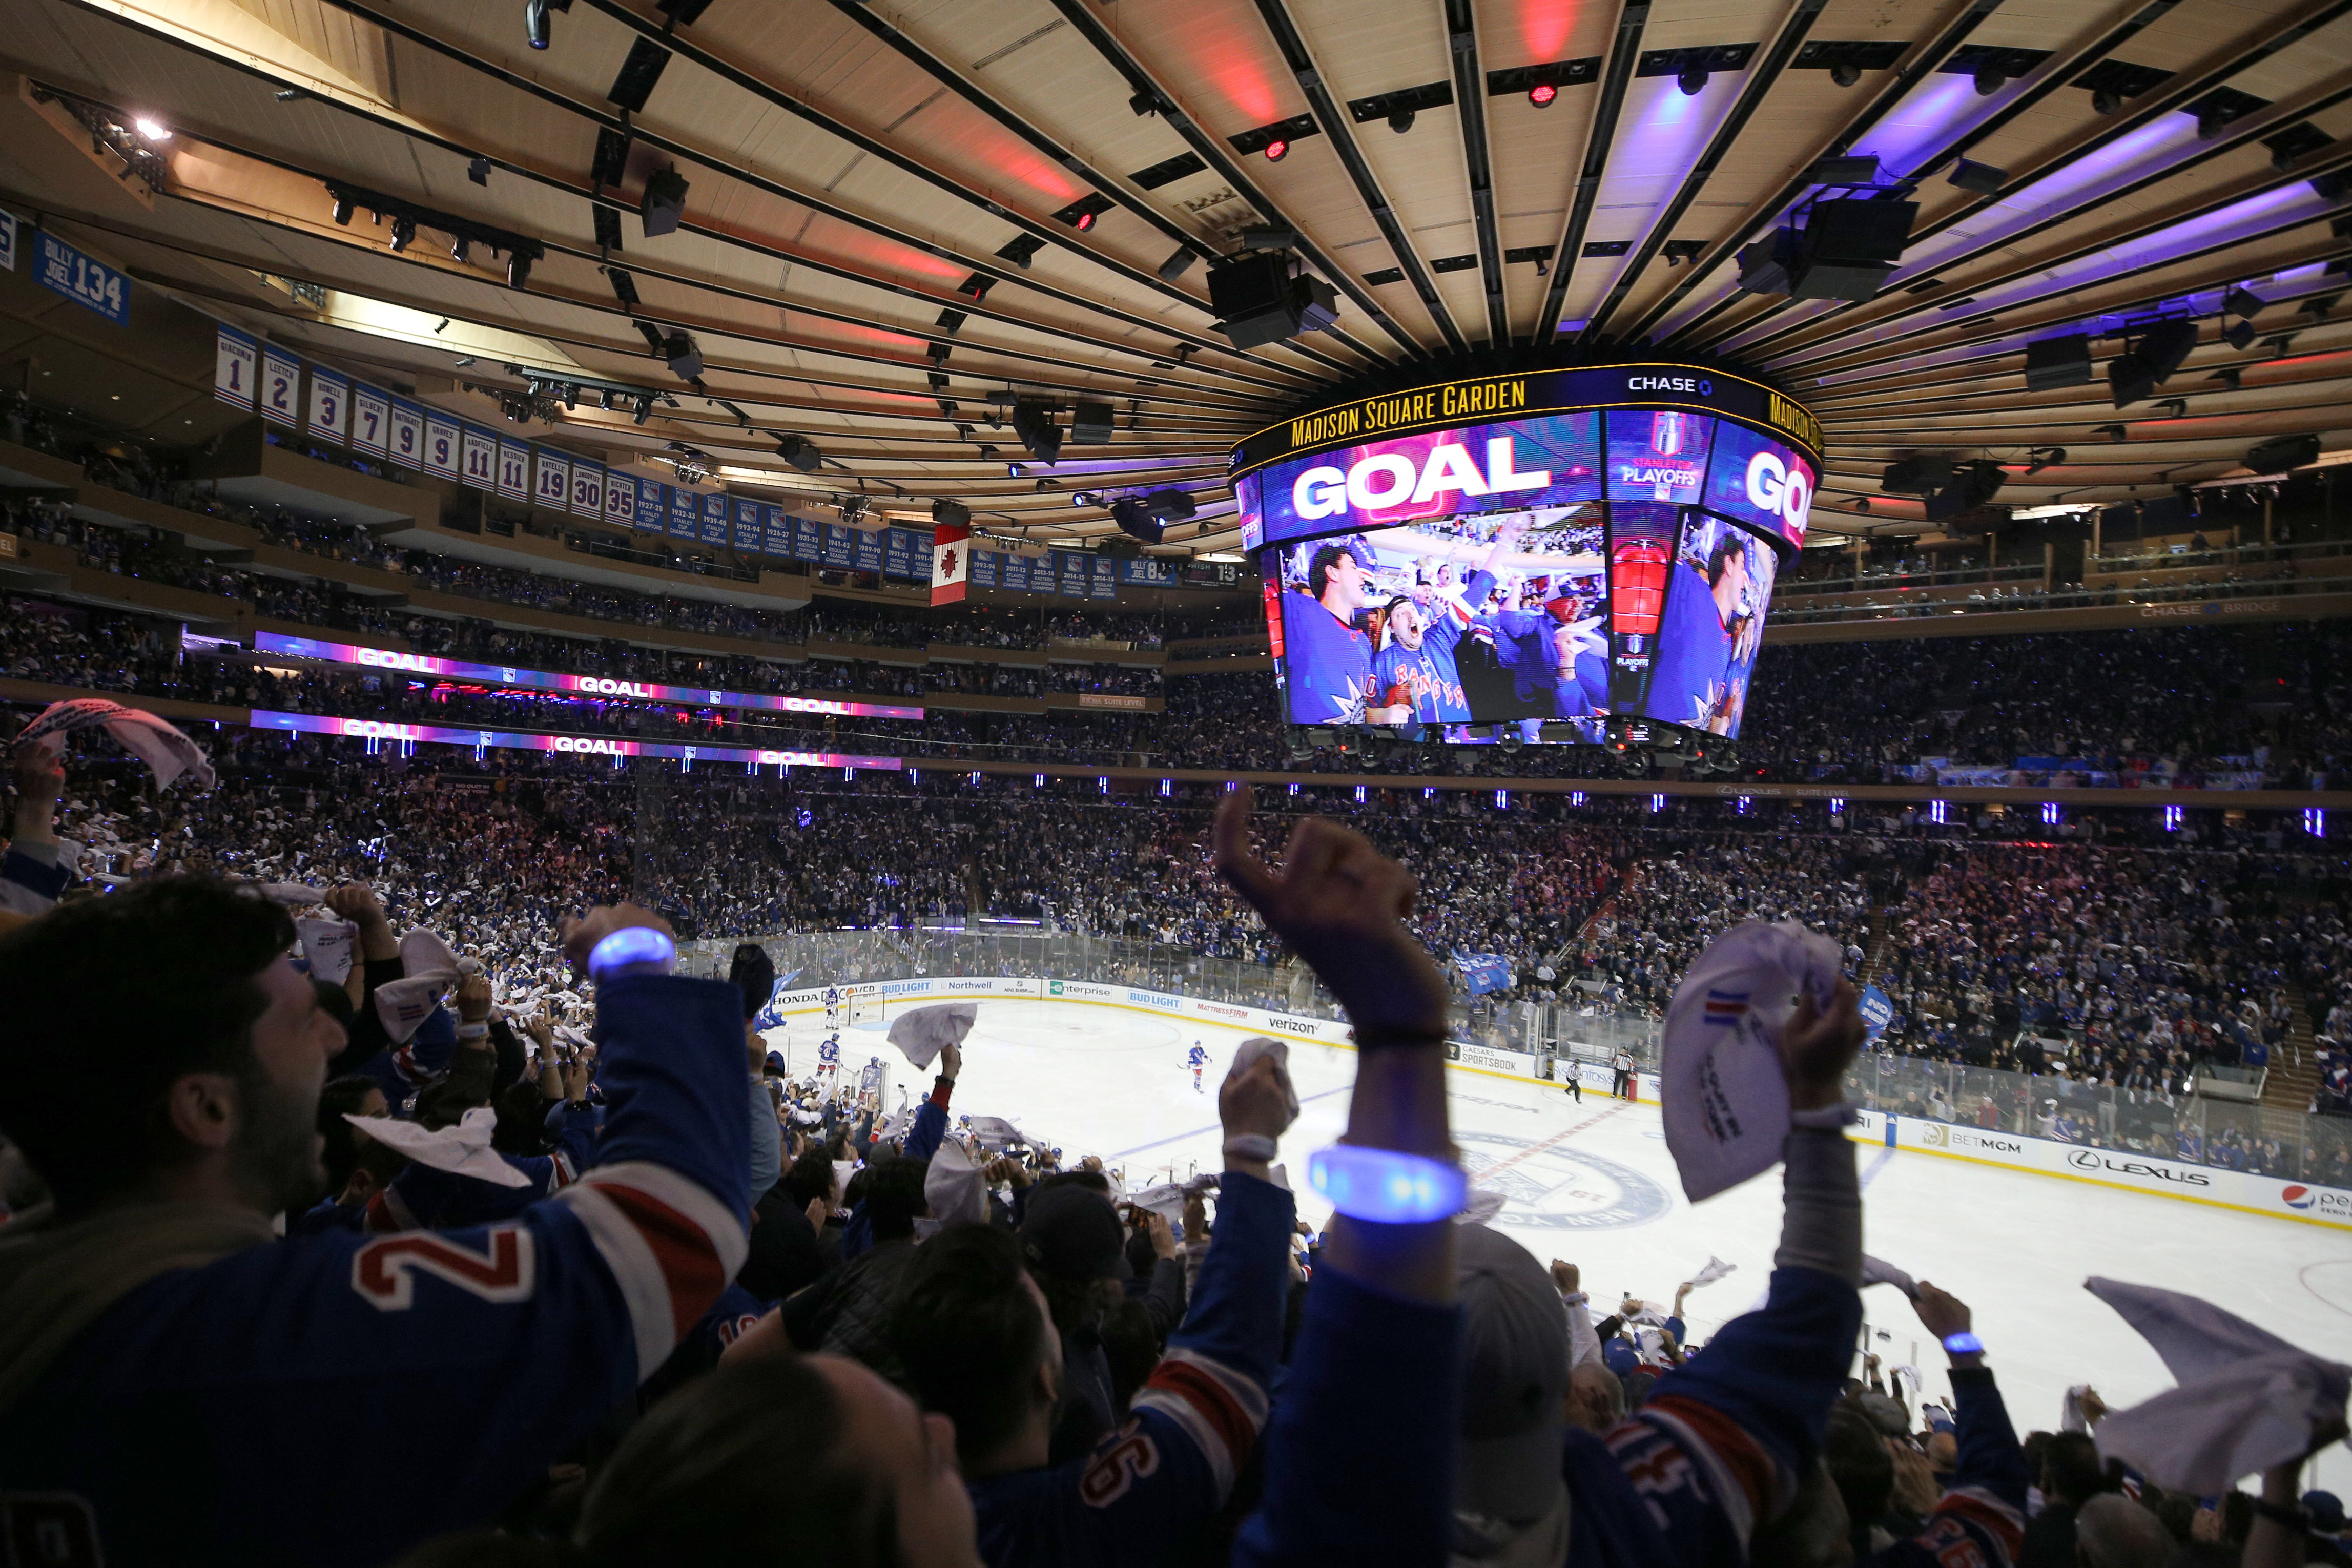 New York Rangers: It's Kaapo Kakko time at Madison Square Garden!